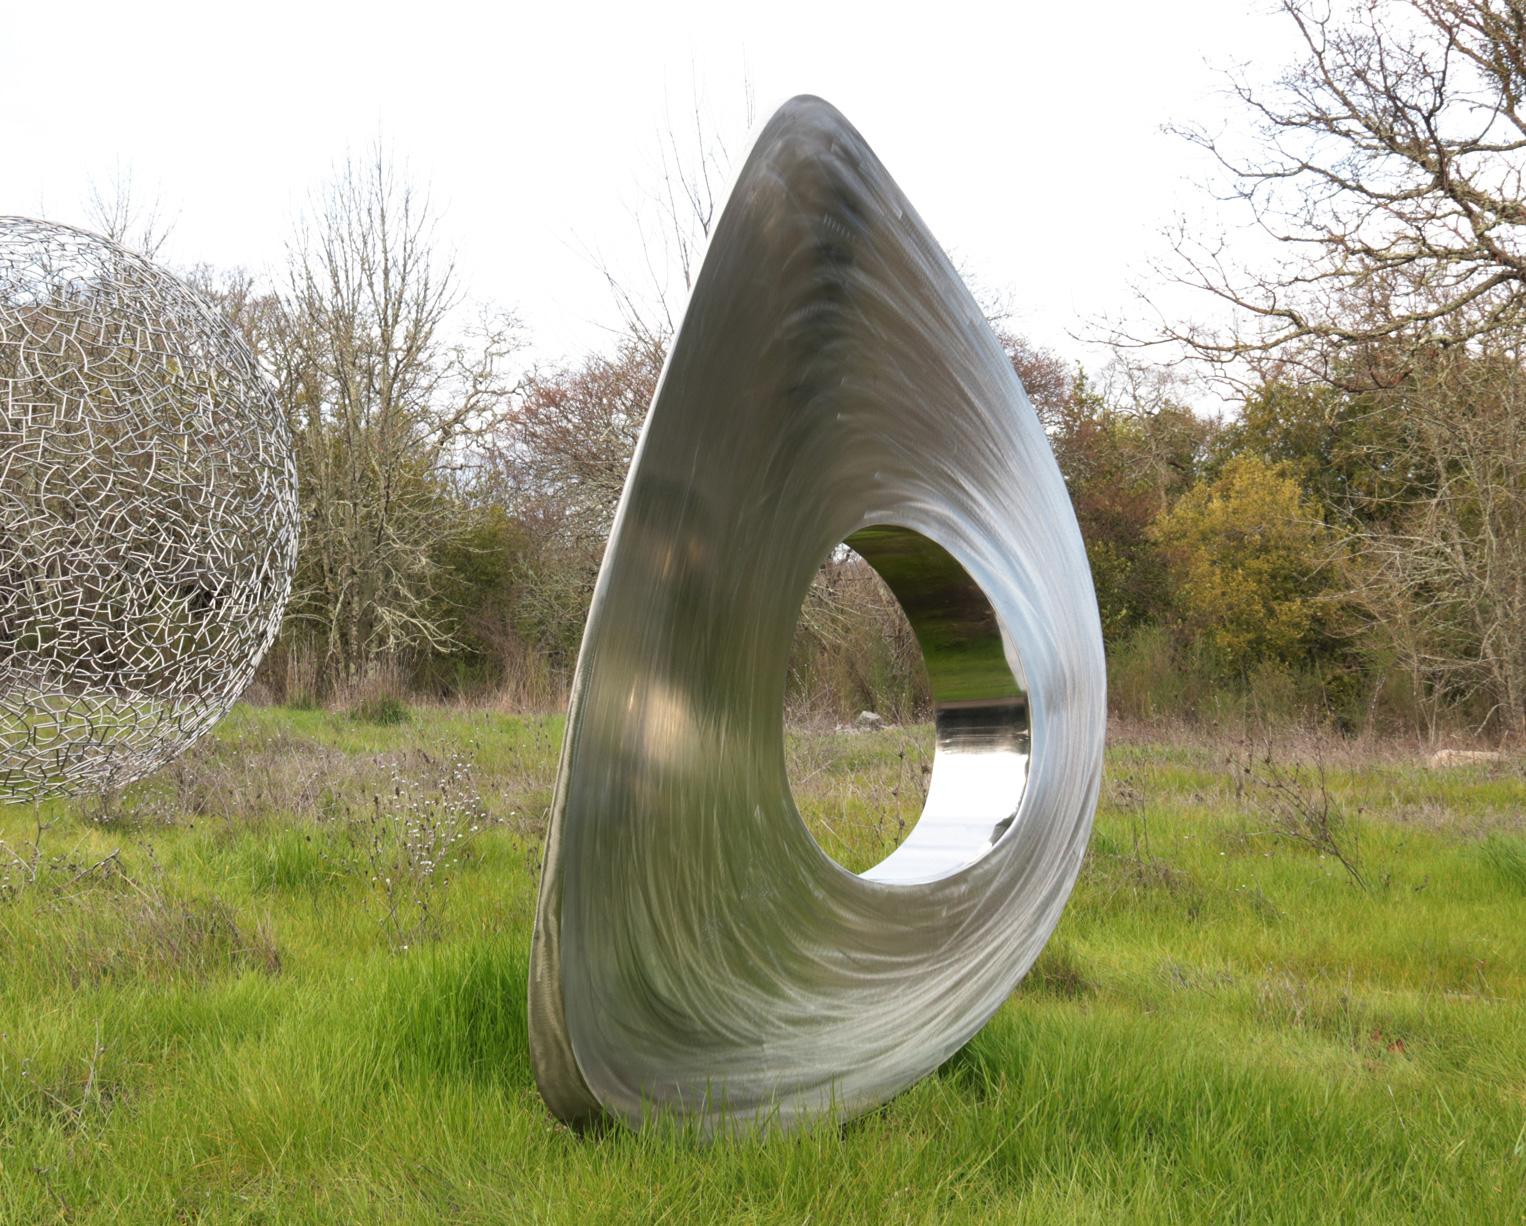 Re-Invention en acier inoxydable - sculpture minimaliste interactive d'Ivan McLean